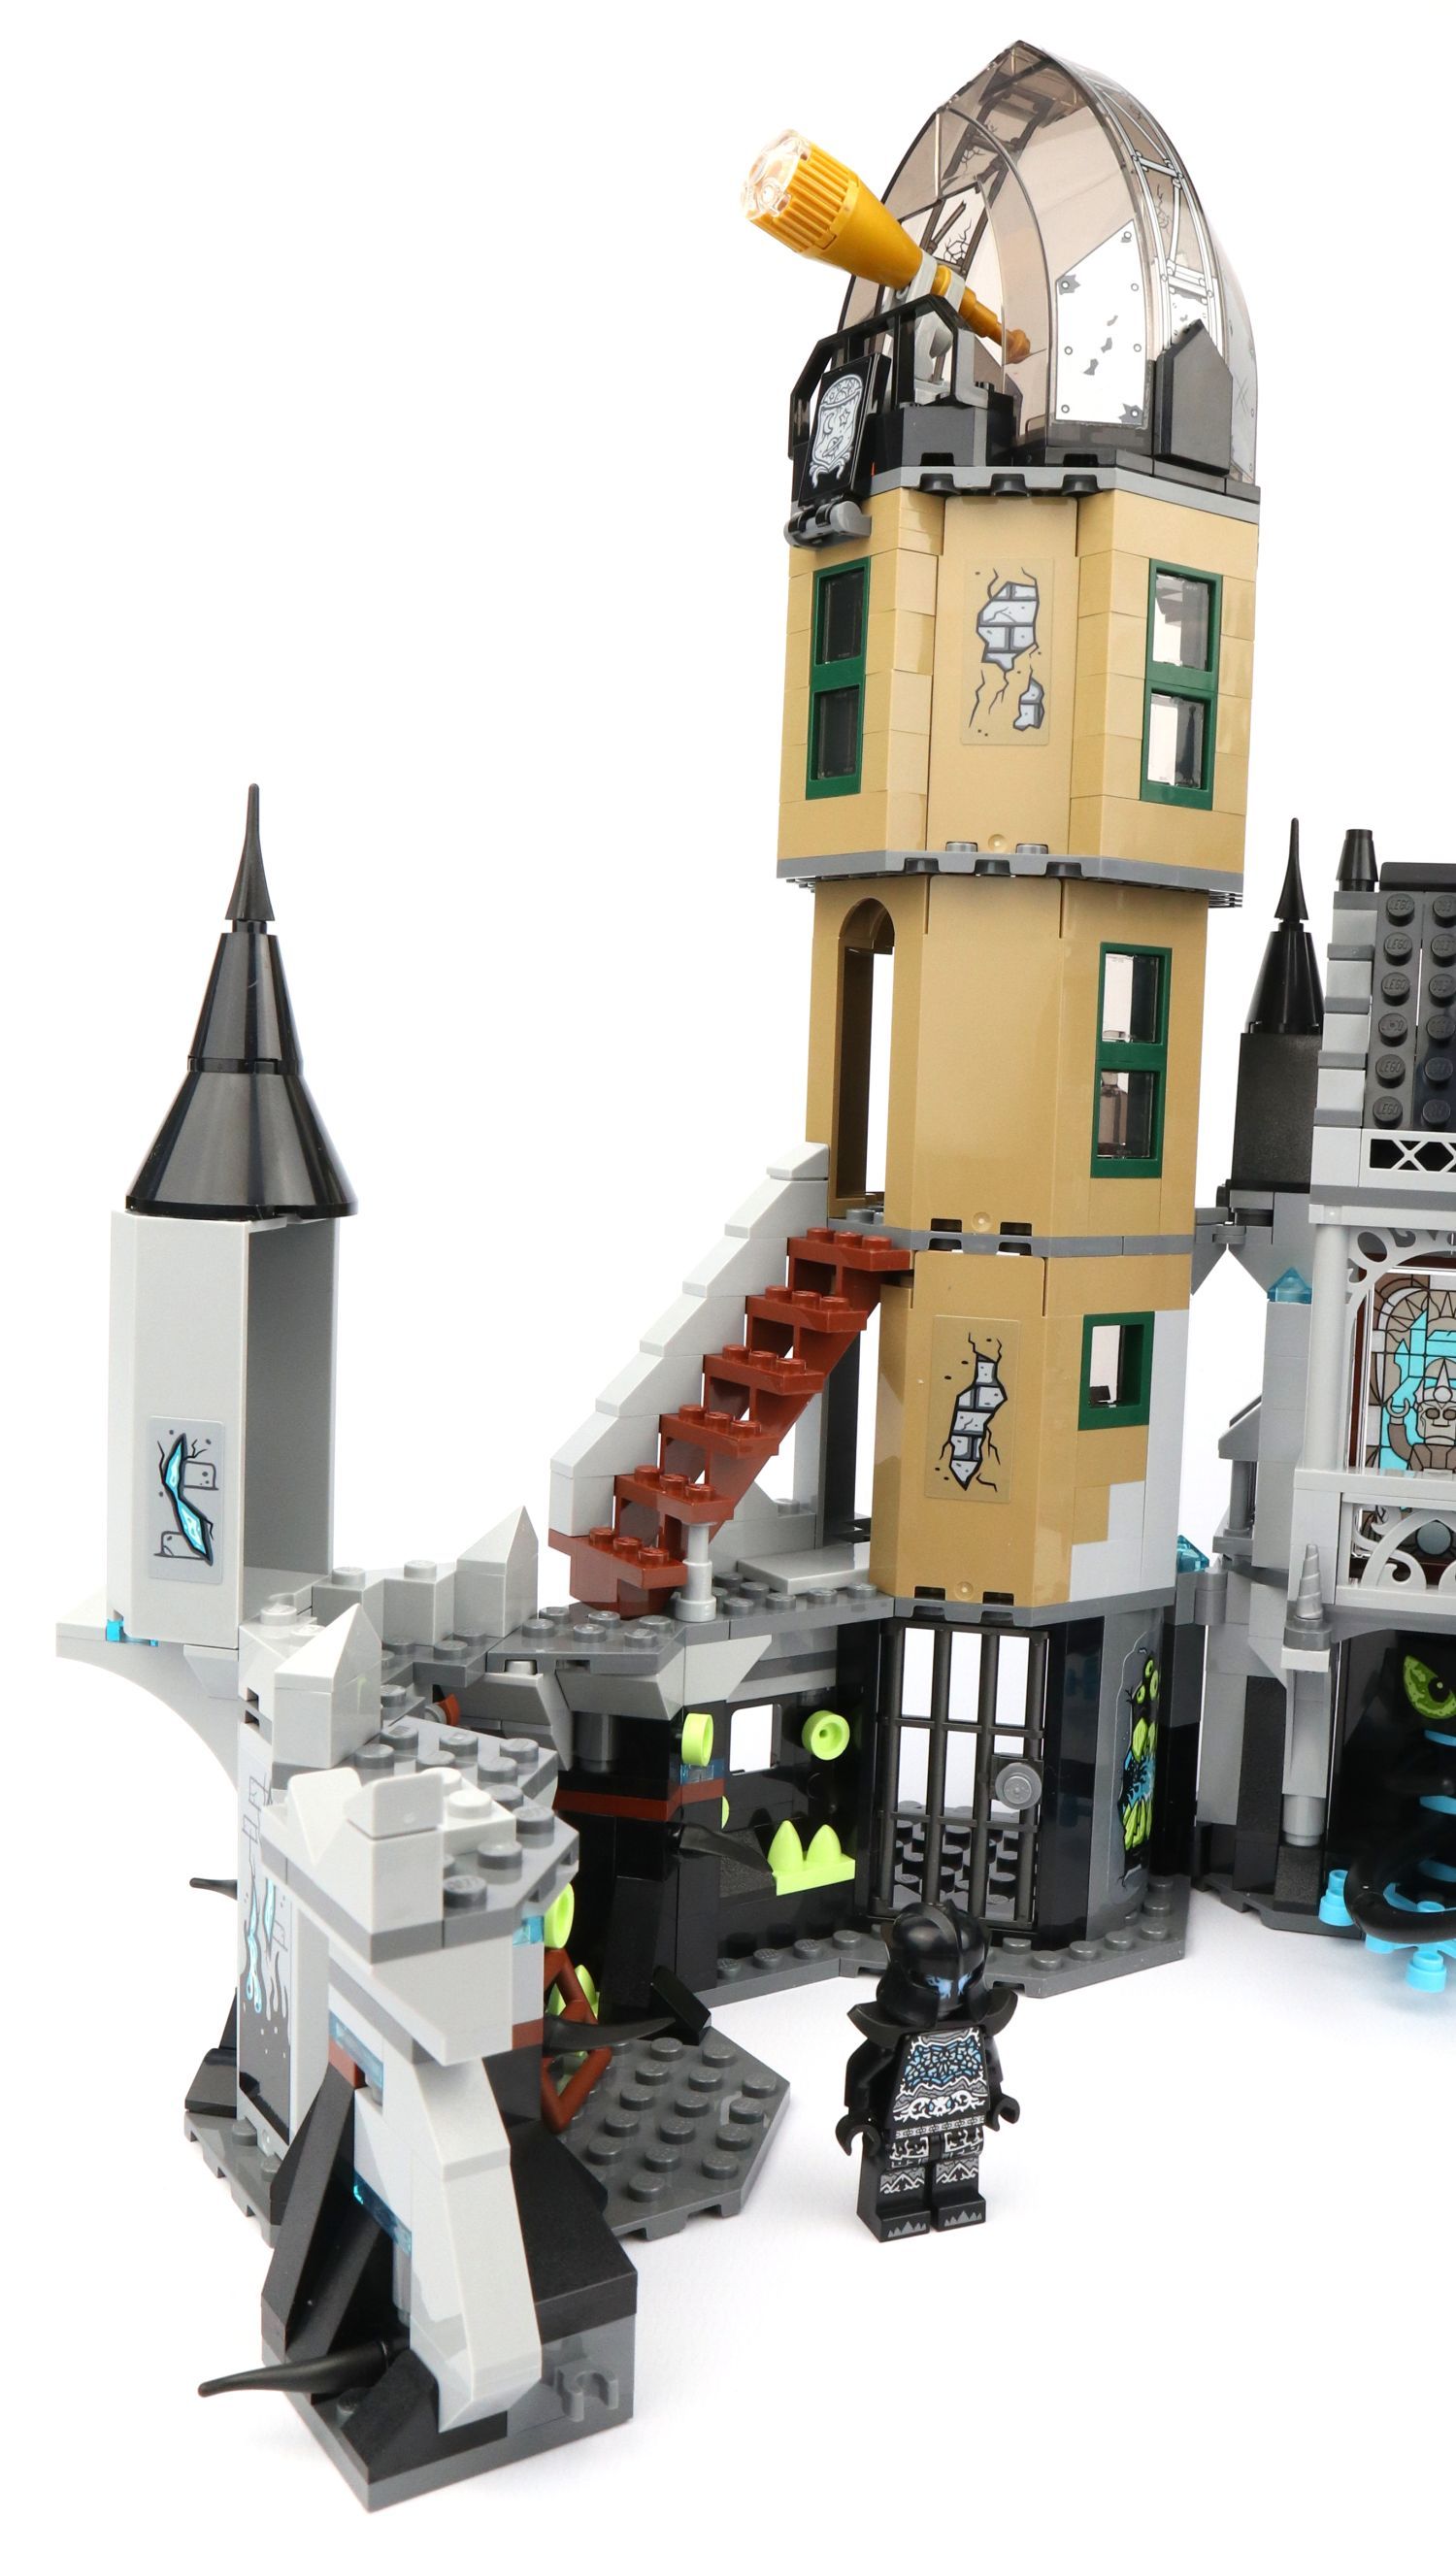 LEGO 70437 Hidden Side Geheimnisvolle Burg im Review